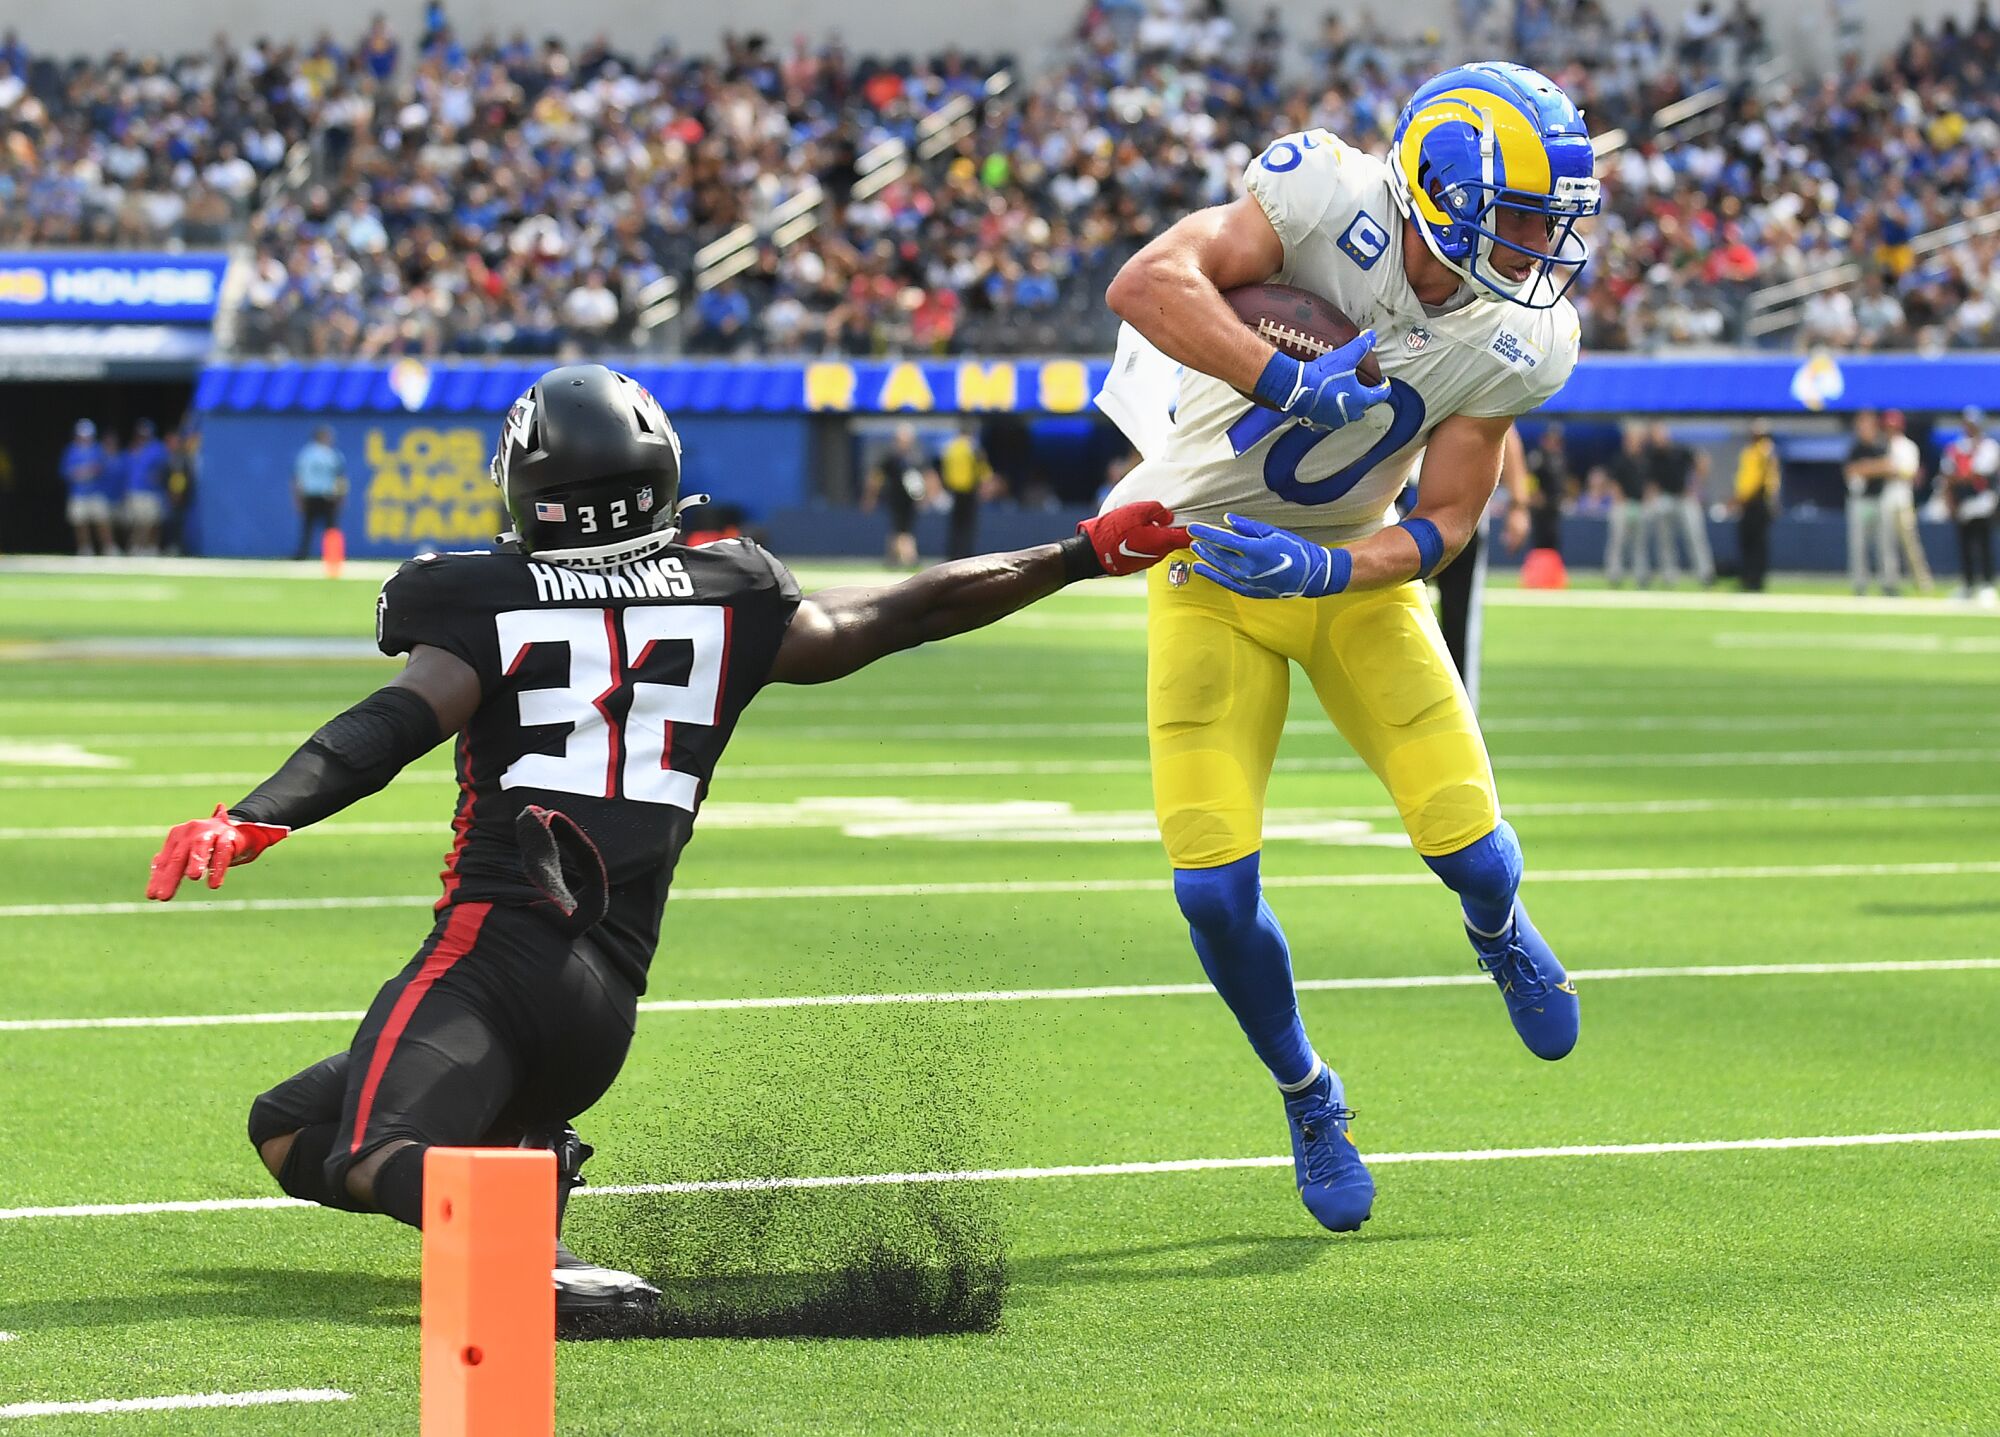 Le receveur large des Rams, Cooper Kupp, bat la sécurité des Falcons, Jaylinn Hawkins, lors d'un touché.